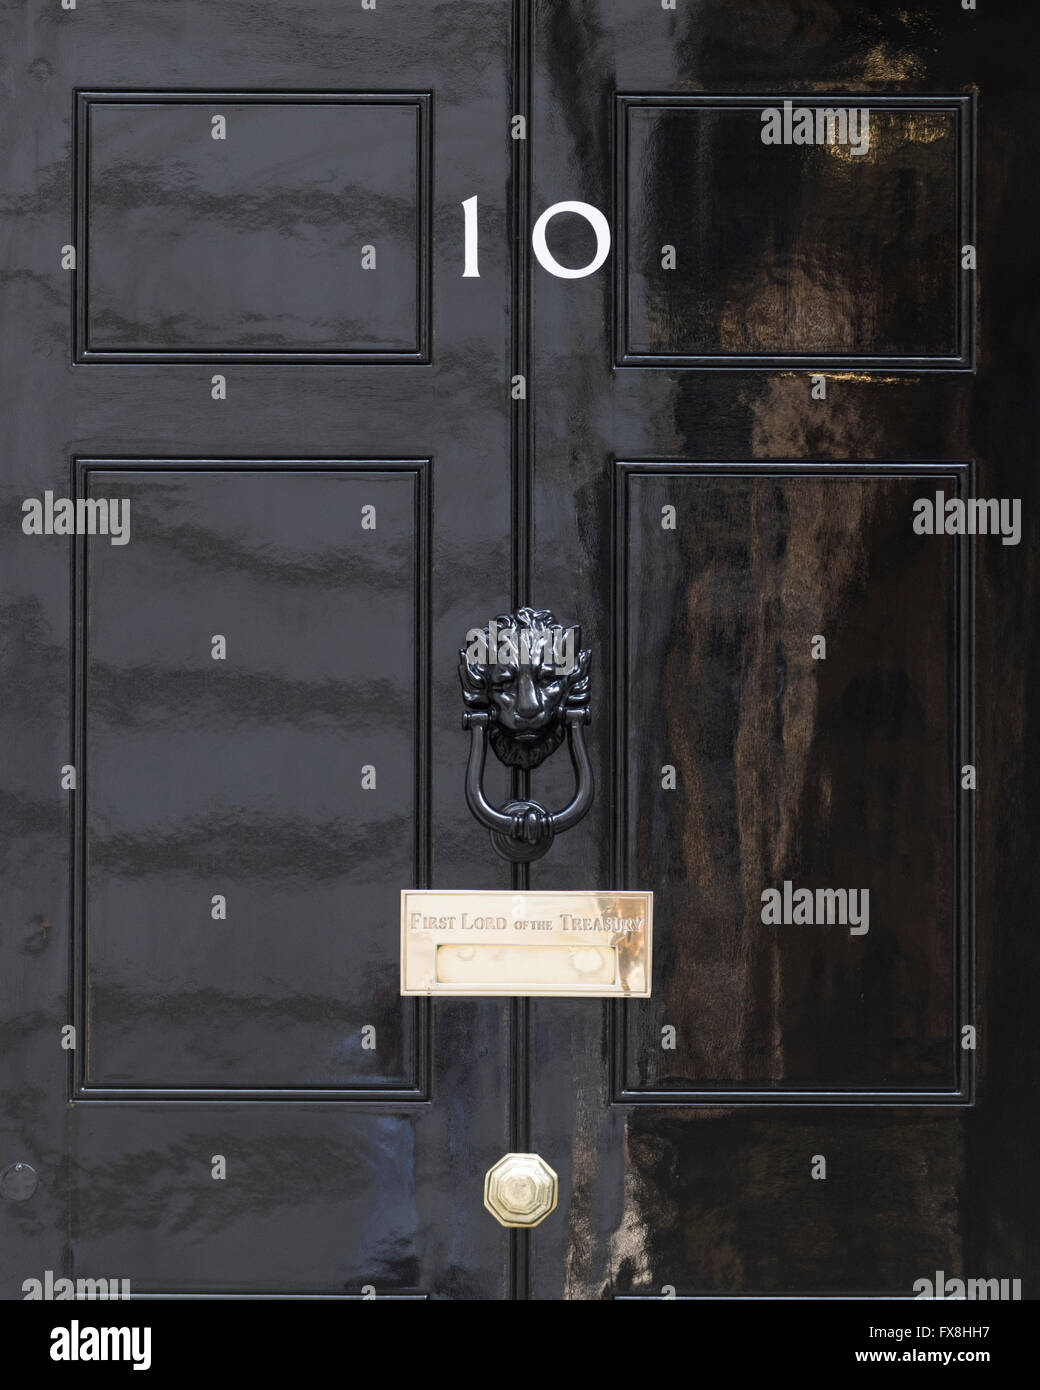 Numéro 10 Downing Street est un bâtiment du gouvernement du Royaume-Uni et est la résidence officielle du Premier Ministre britannique. Banque D'Images